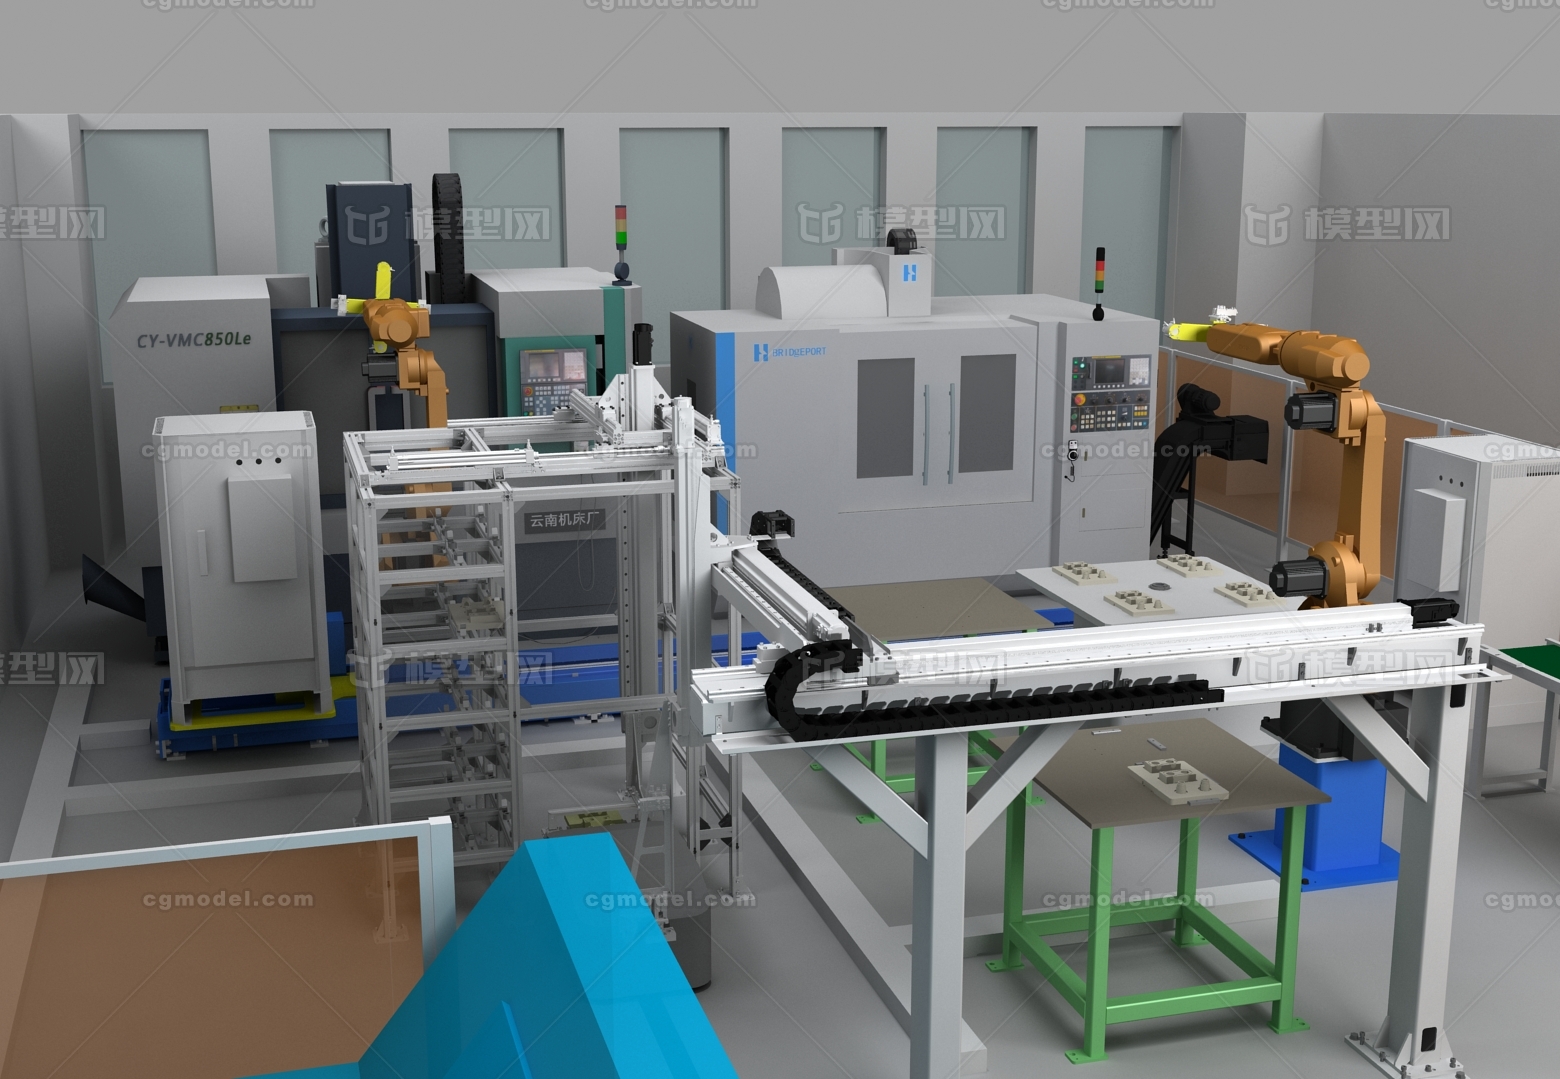 柔性装配生产线,机床,加工中心,厂房,机器人,机械手臂,自动化生产线